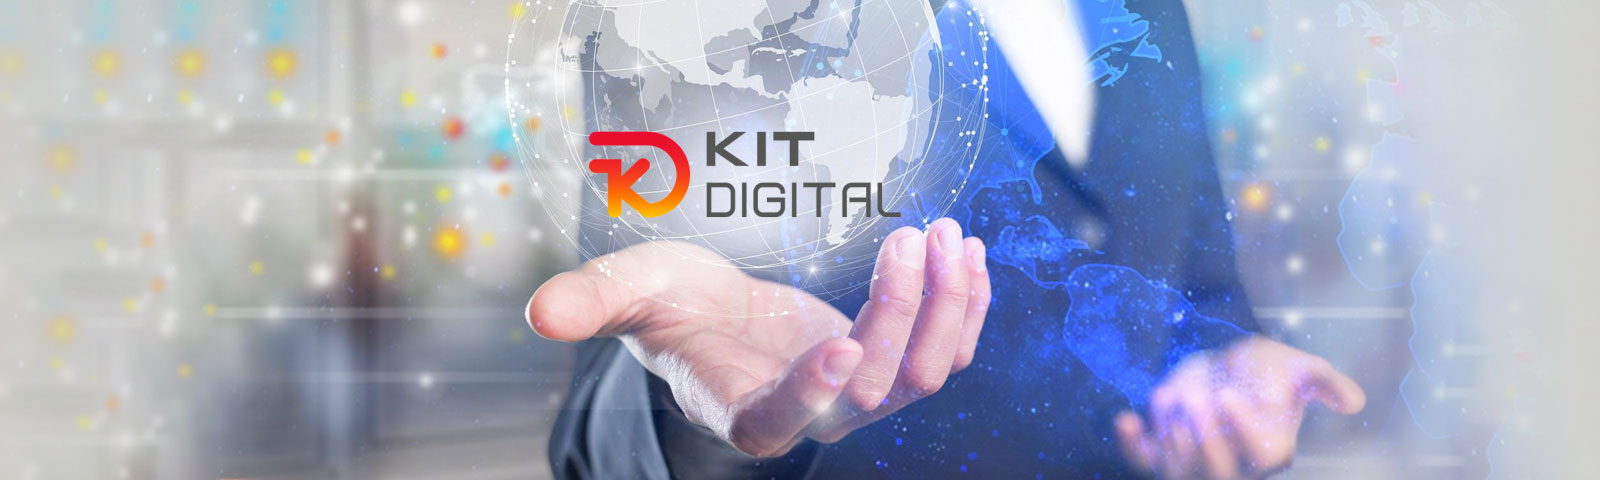 Kit Digital abre los segmentos IV y V para medianas empresas con ayudas de hasta 29.000€